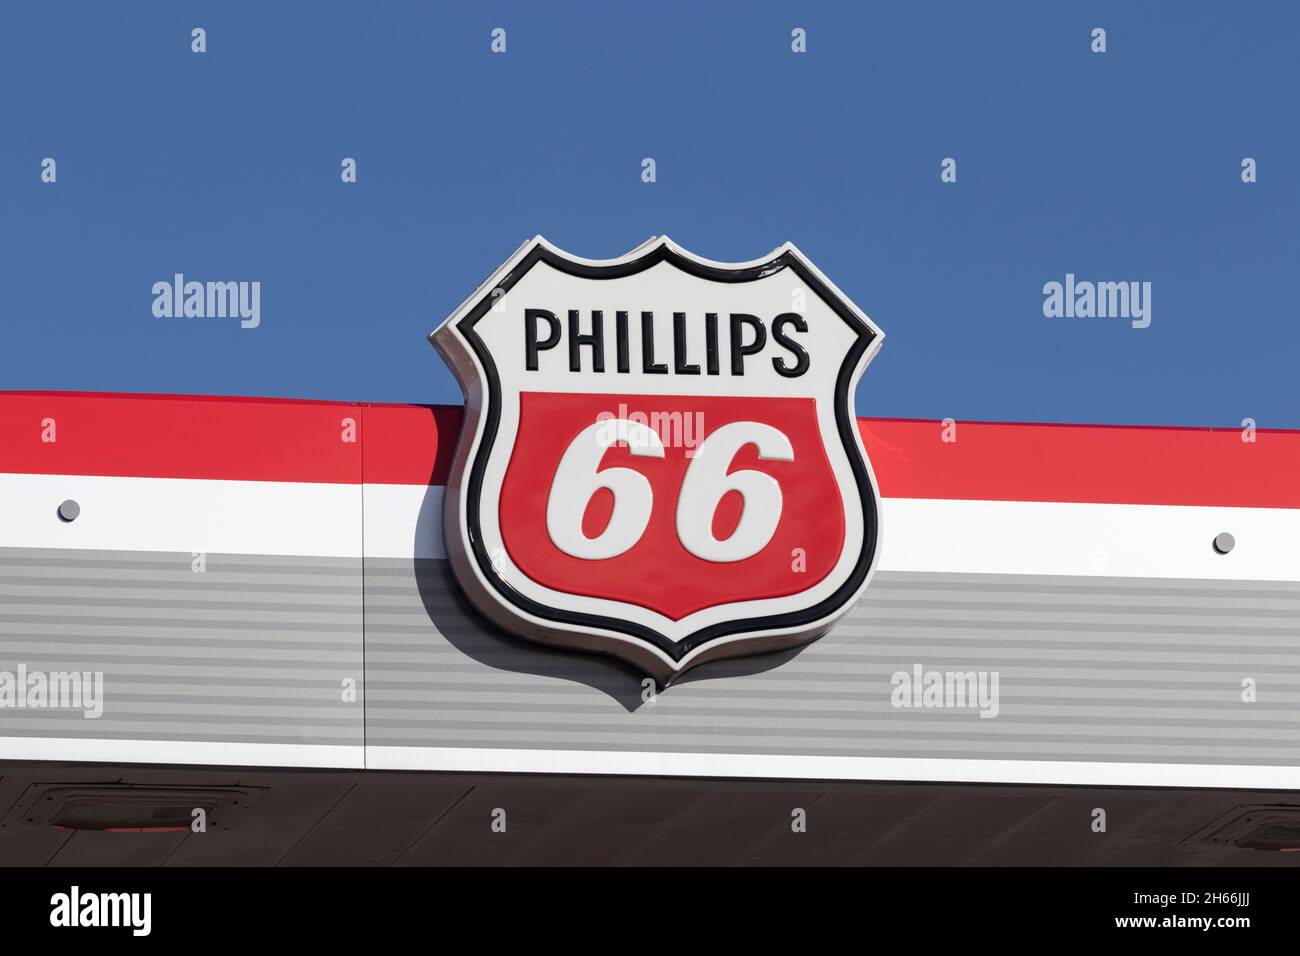 Pi.Wayne - Circa novembre 2021 : station de gaz et de remplissage Phillips 66.Phillips 66 est une société américaine d'énergie et un raffineur de pétrole indépendant. Banque D'Images